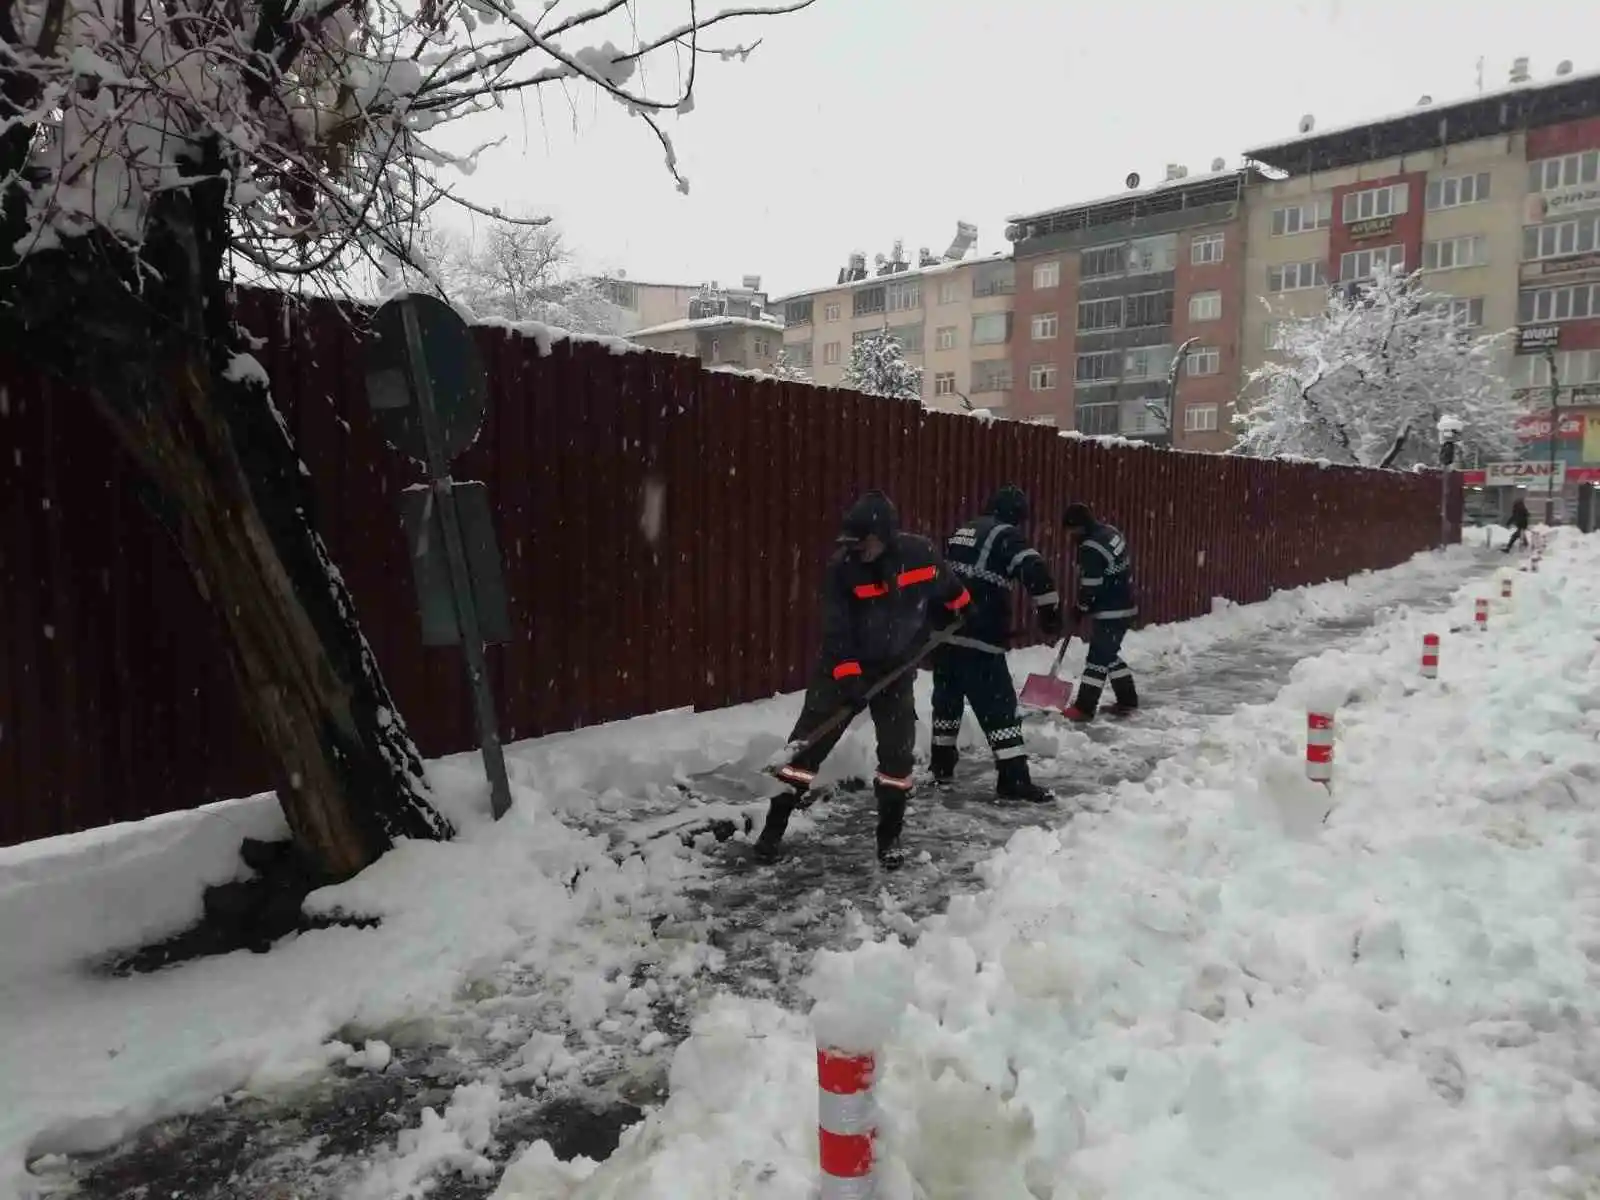 Bingöl Belediyesinin karla mücadelesi sürüyor
